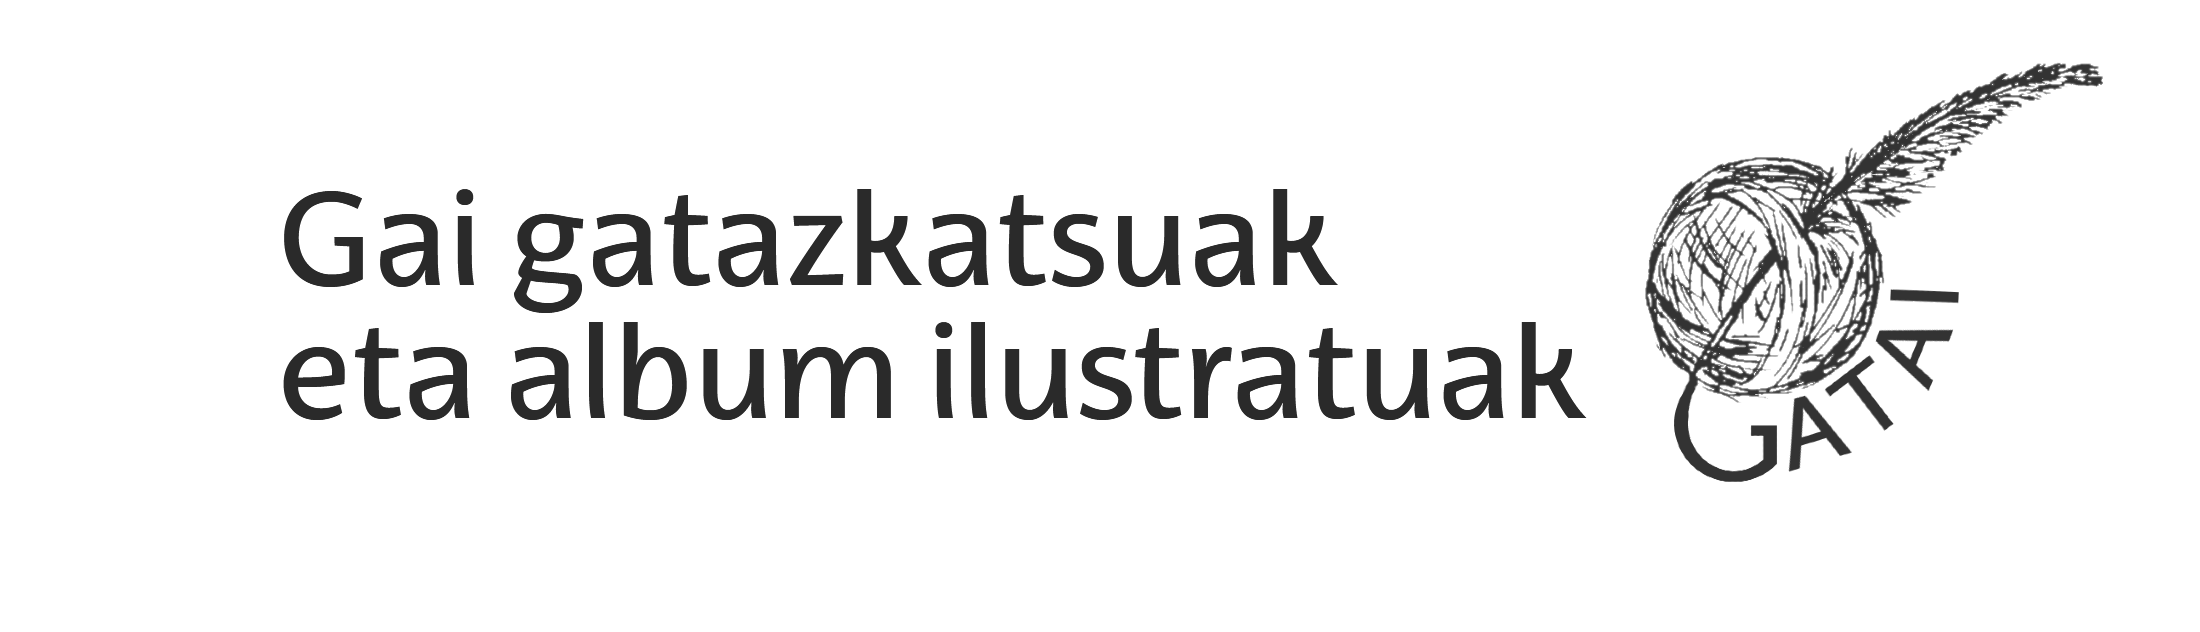 GATAI proiektuaren logoa